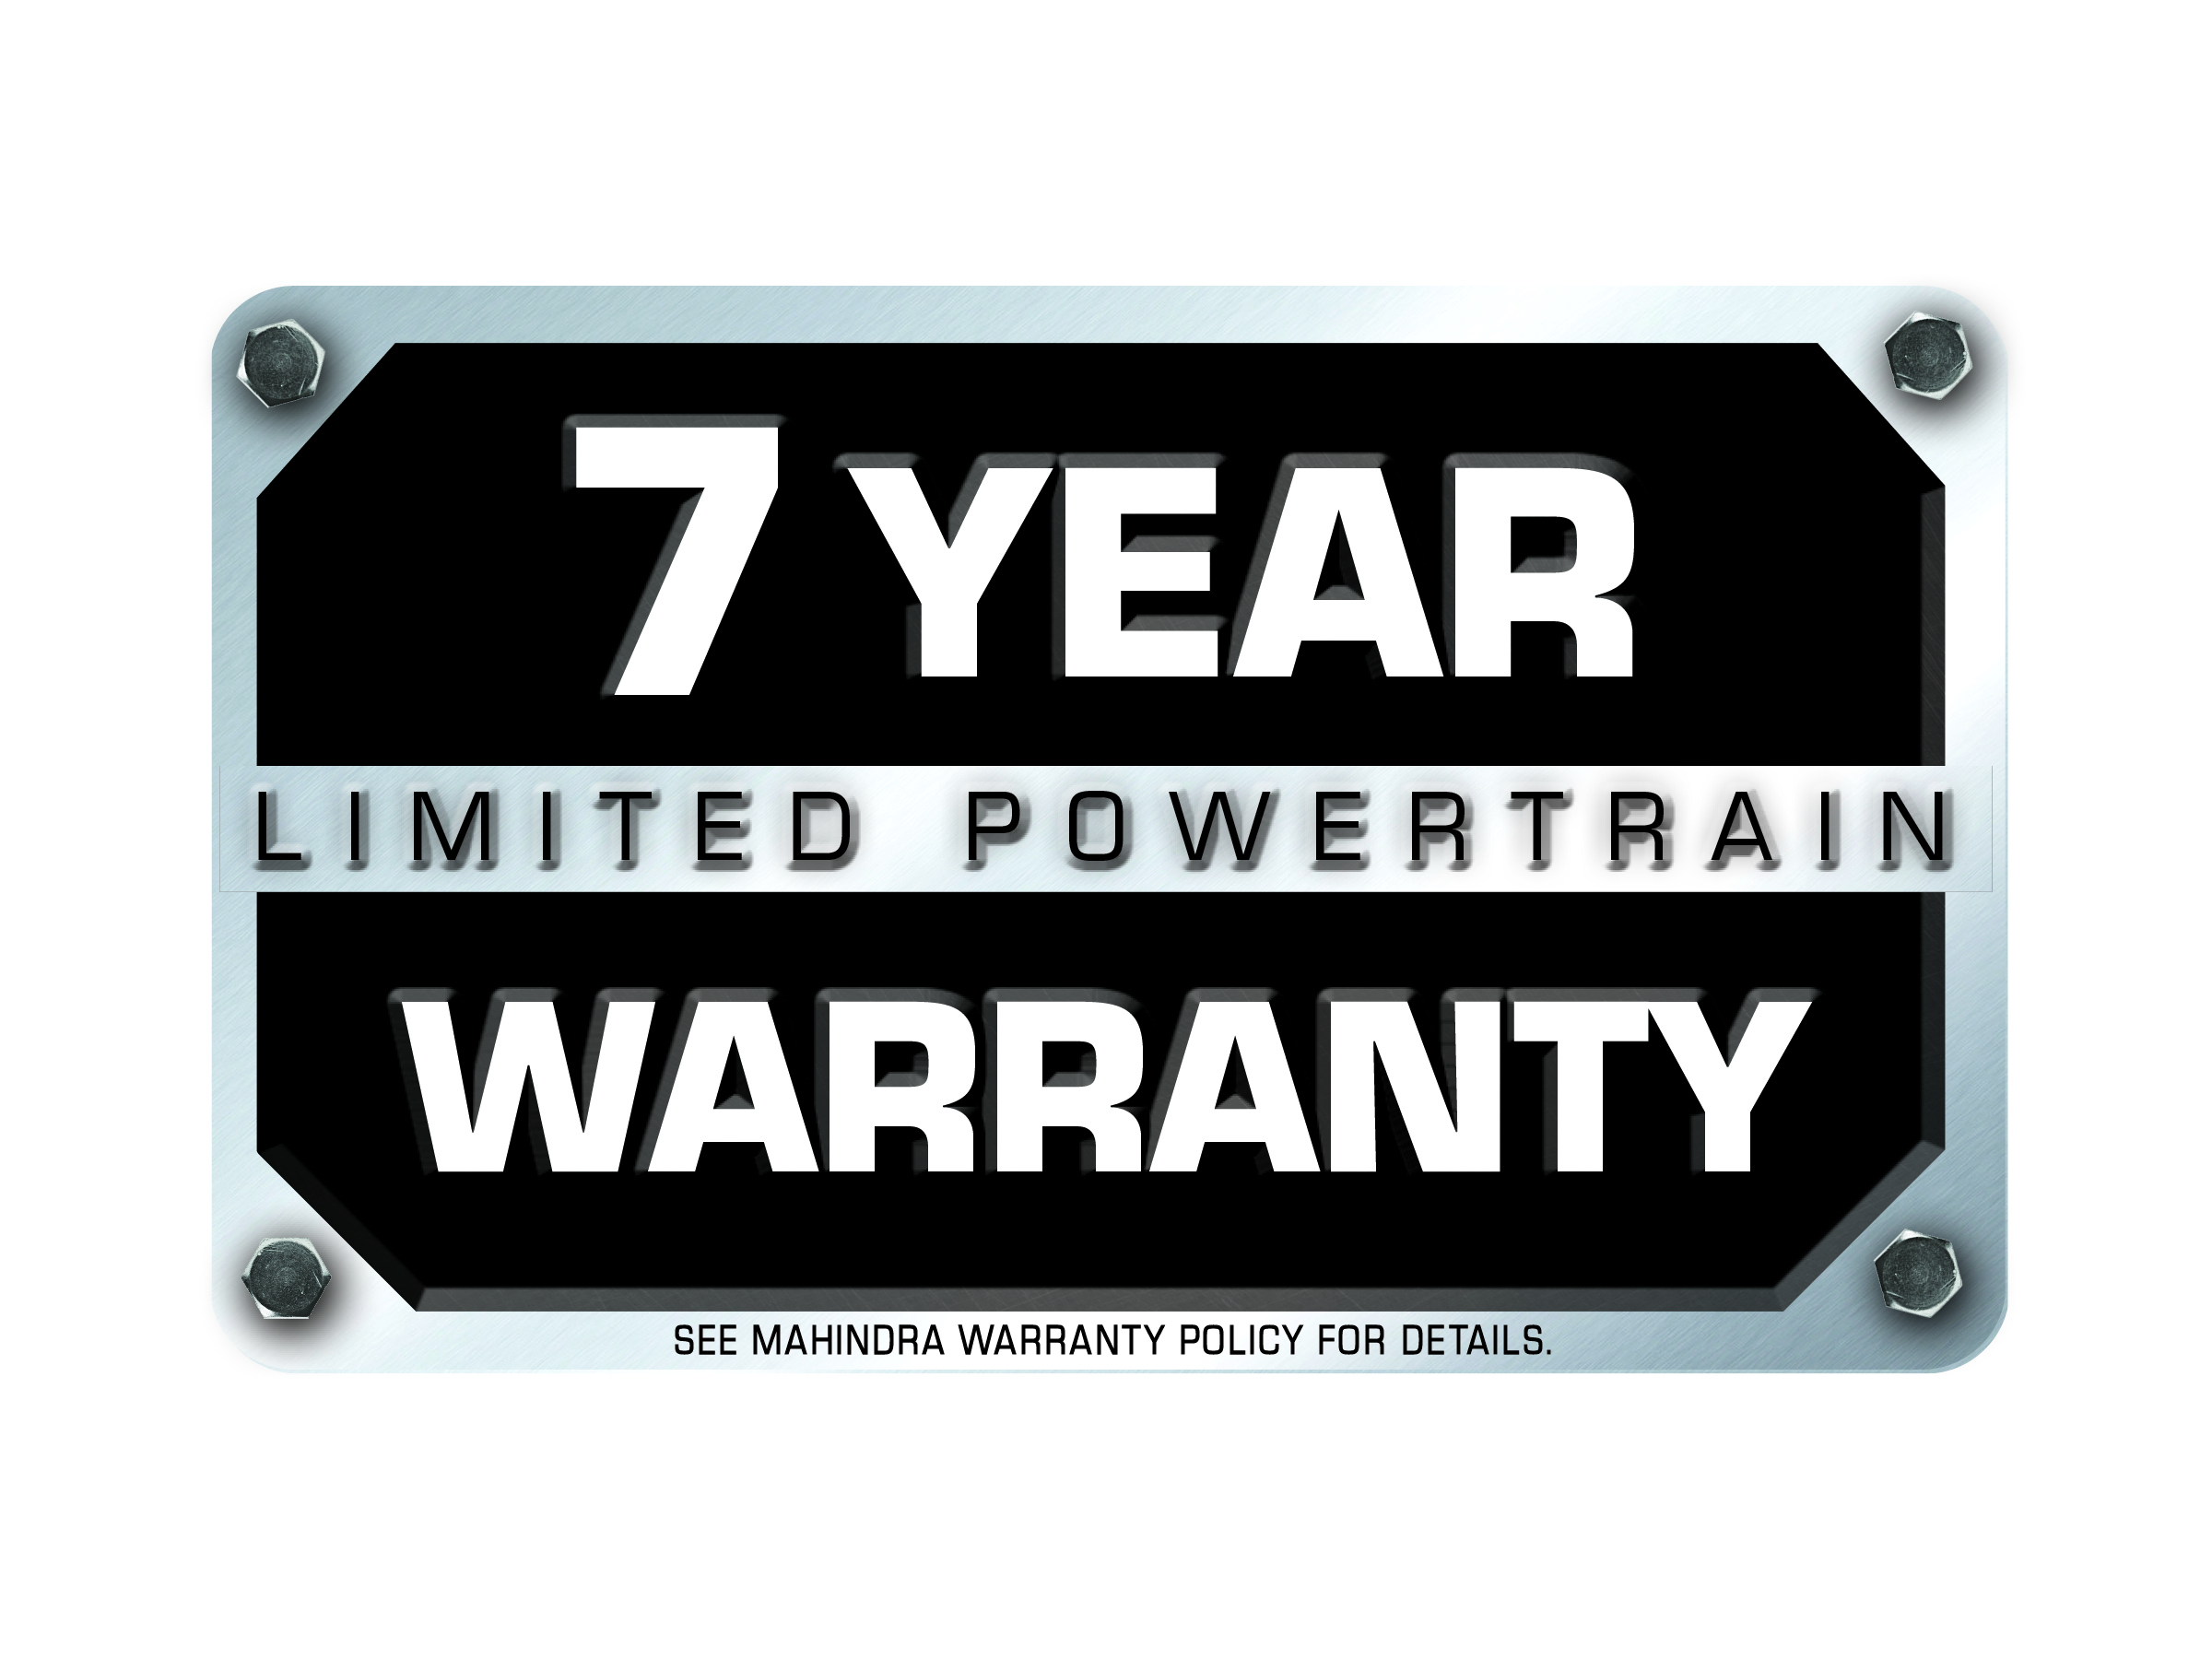 7 Year Limited Powertrain Warranty